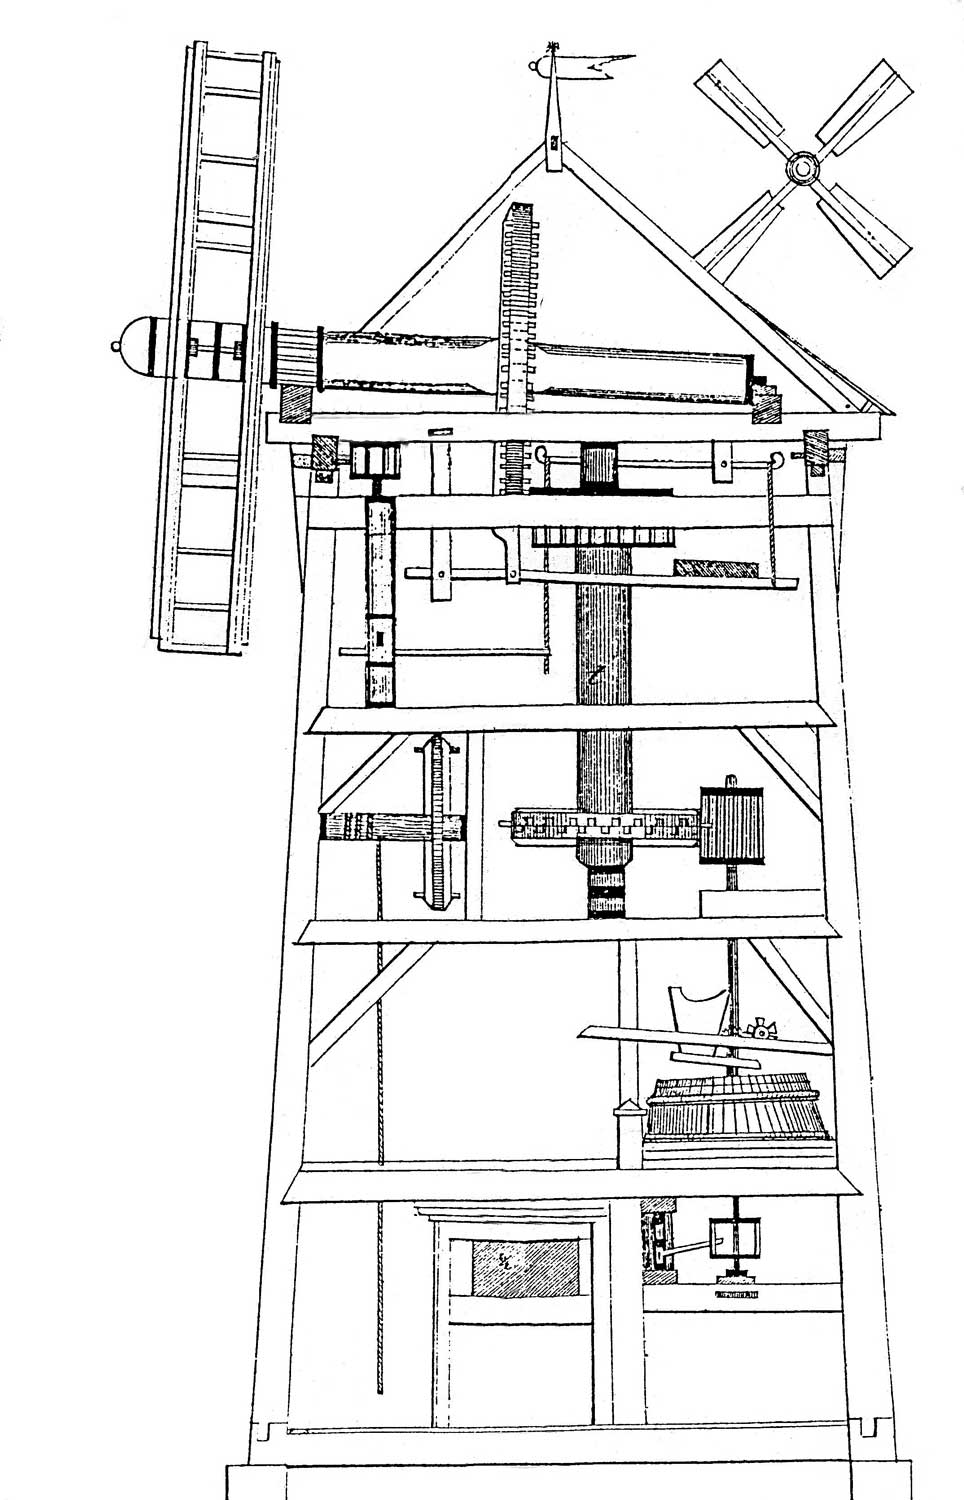 Bild 1 – Schnitt durch eine Turmwindmühle; Slg. H. Riedel, Zeitz